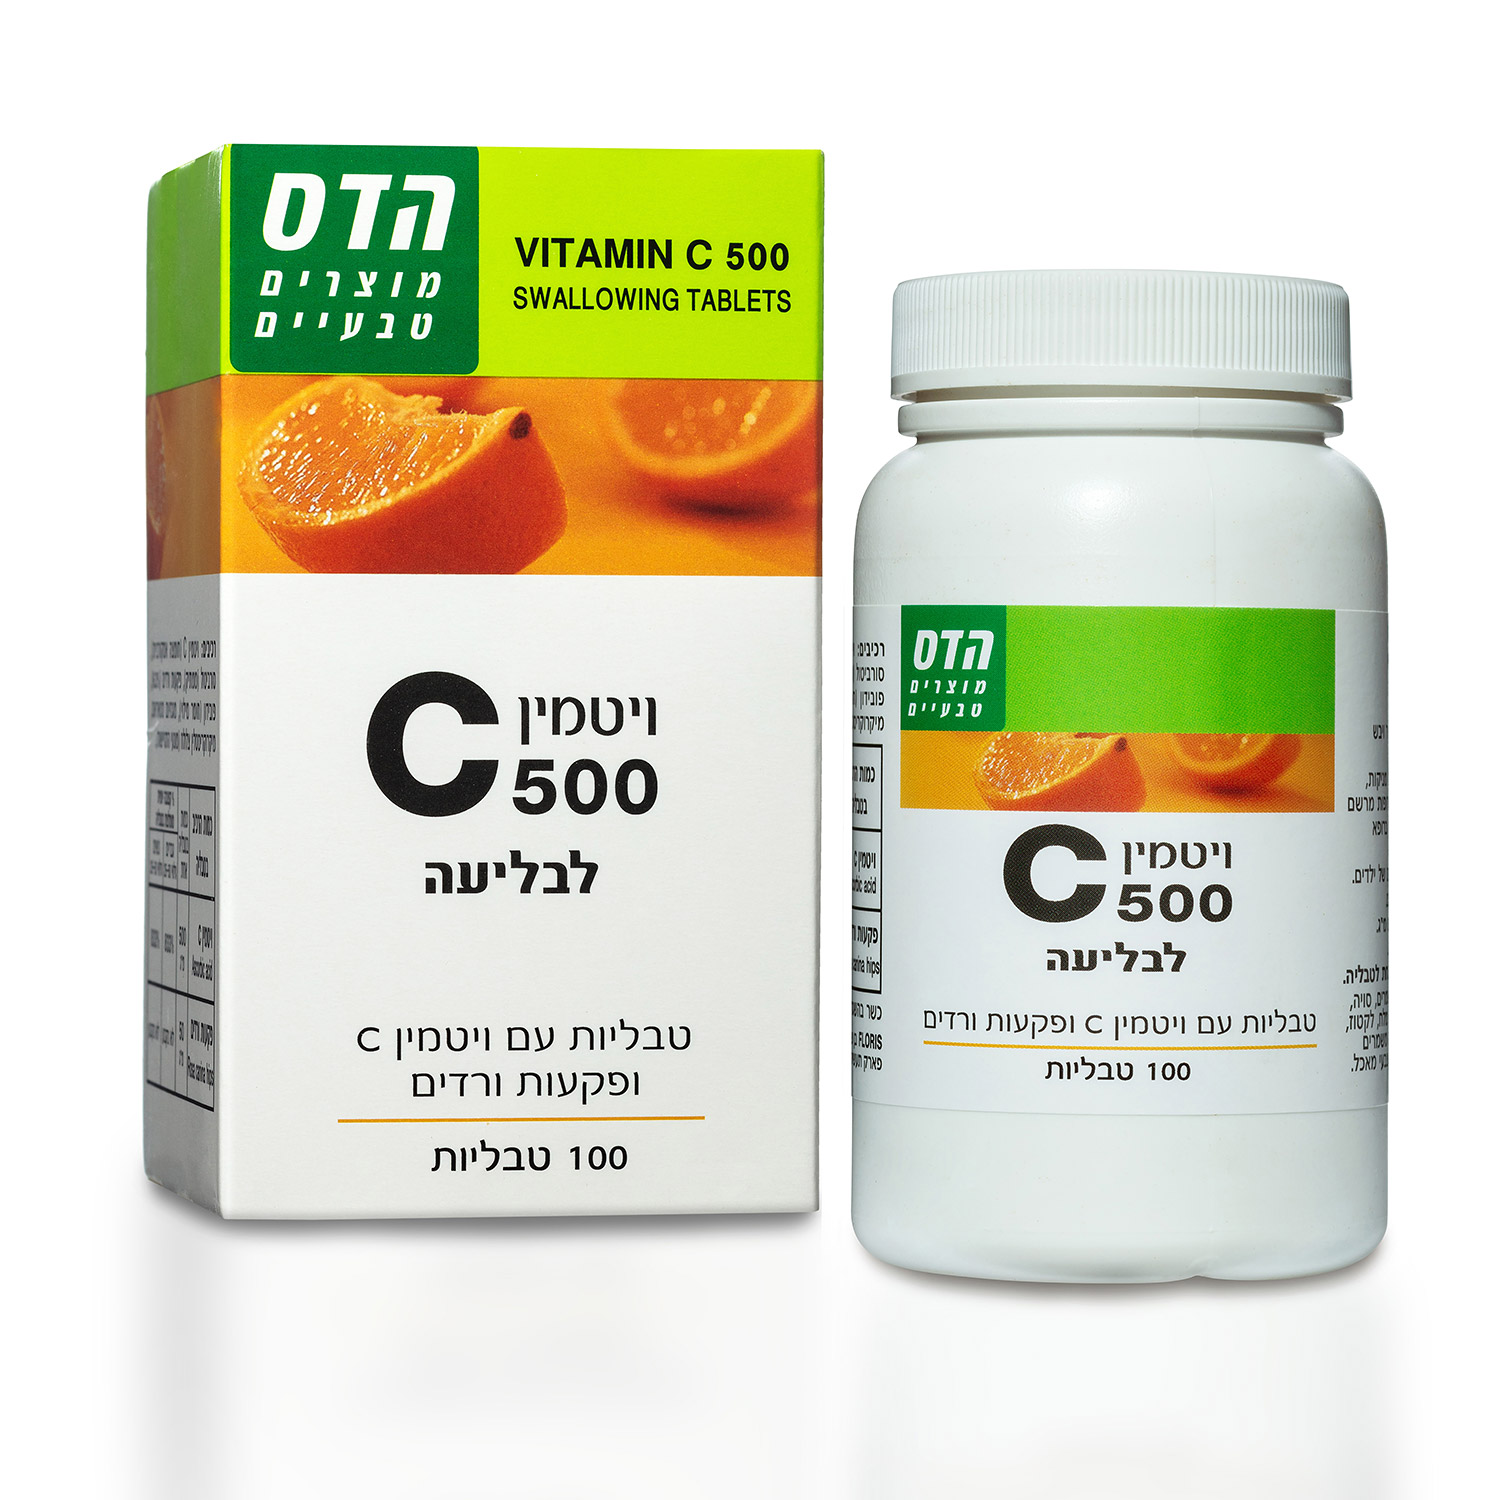 תמונת מוצר ויטמין C 500